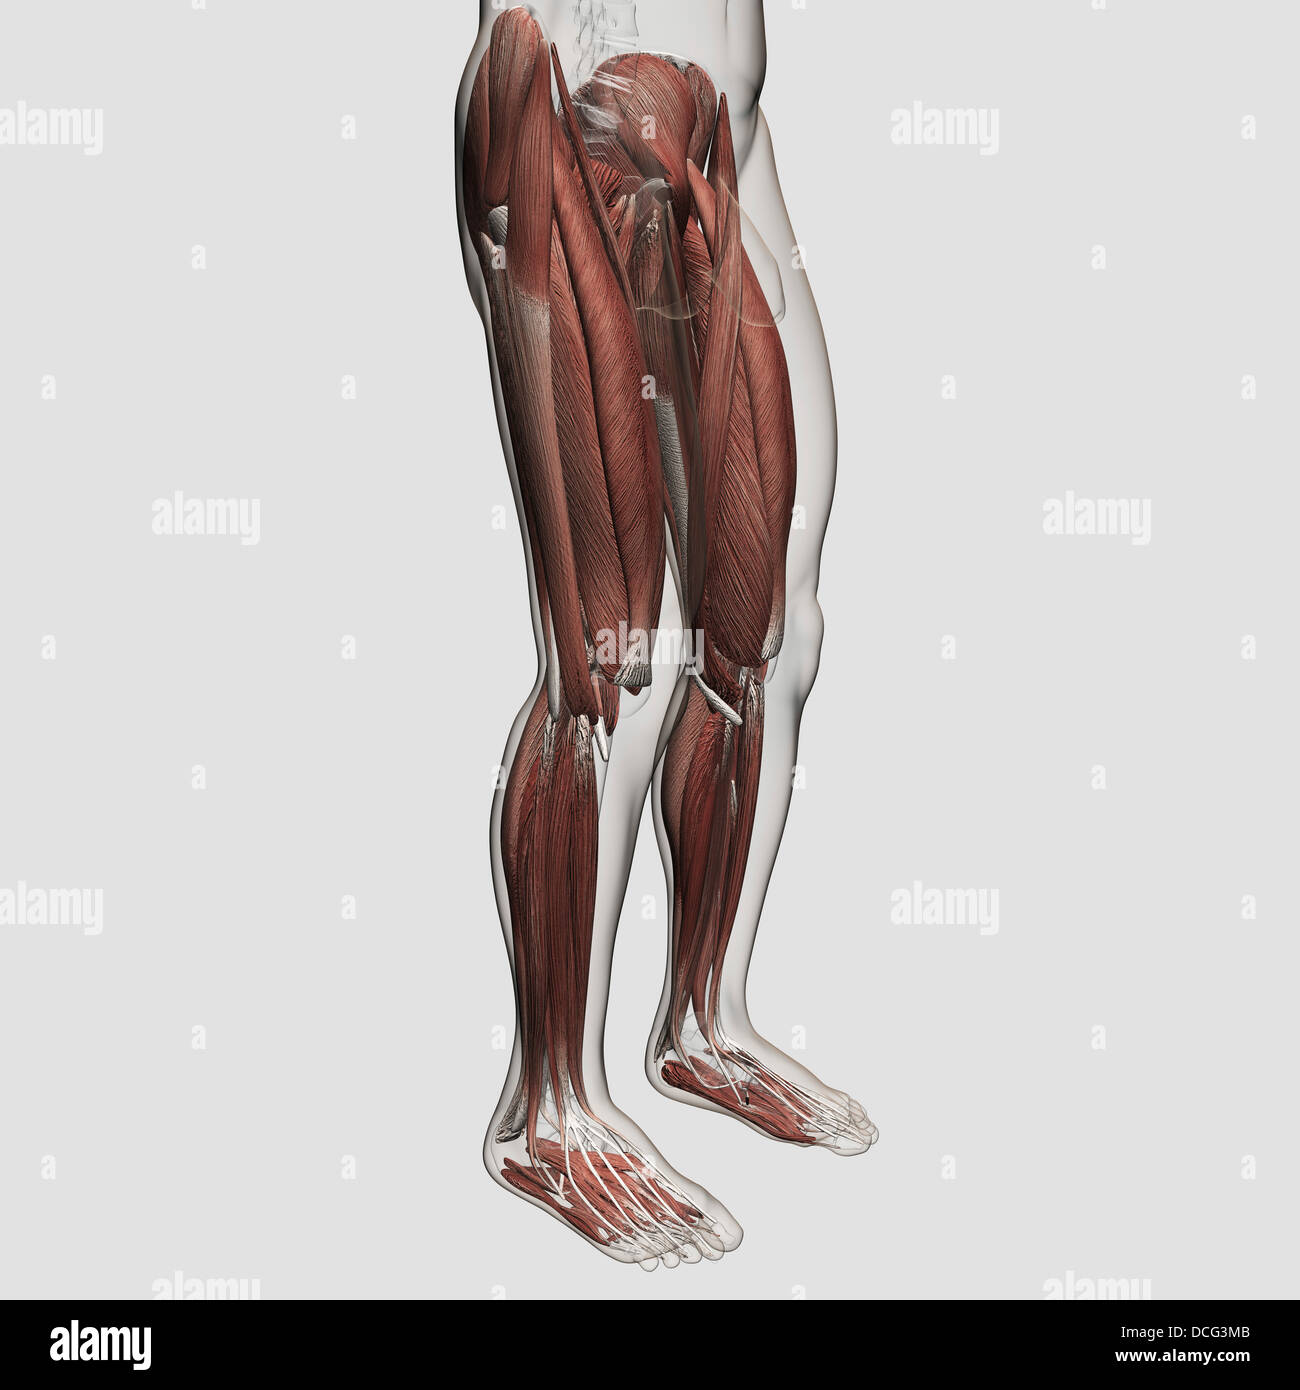 Maschio anatomia muscolare delle gambe umane, vista anteriore. Foto Stock